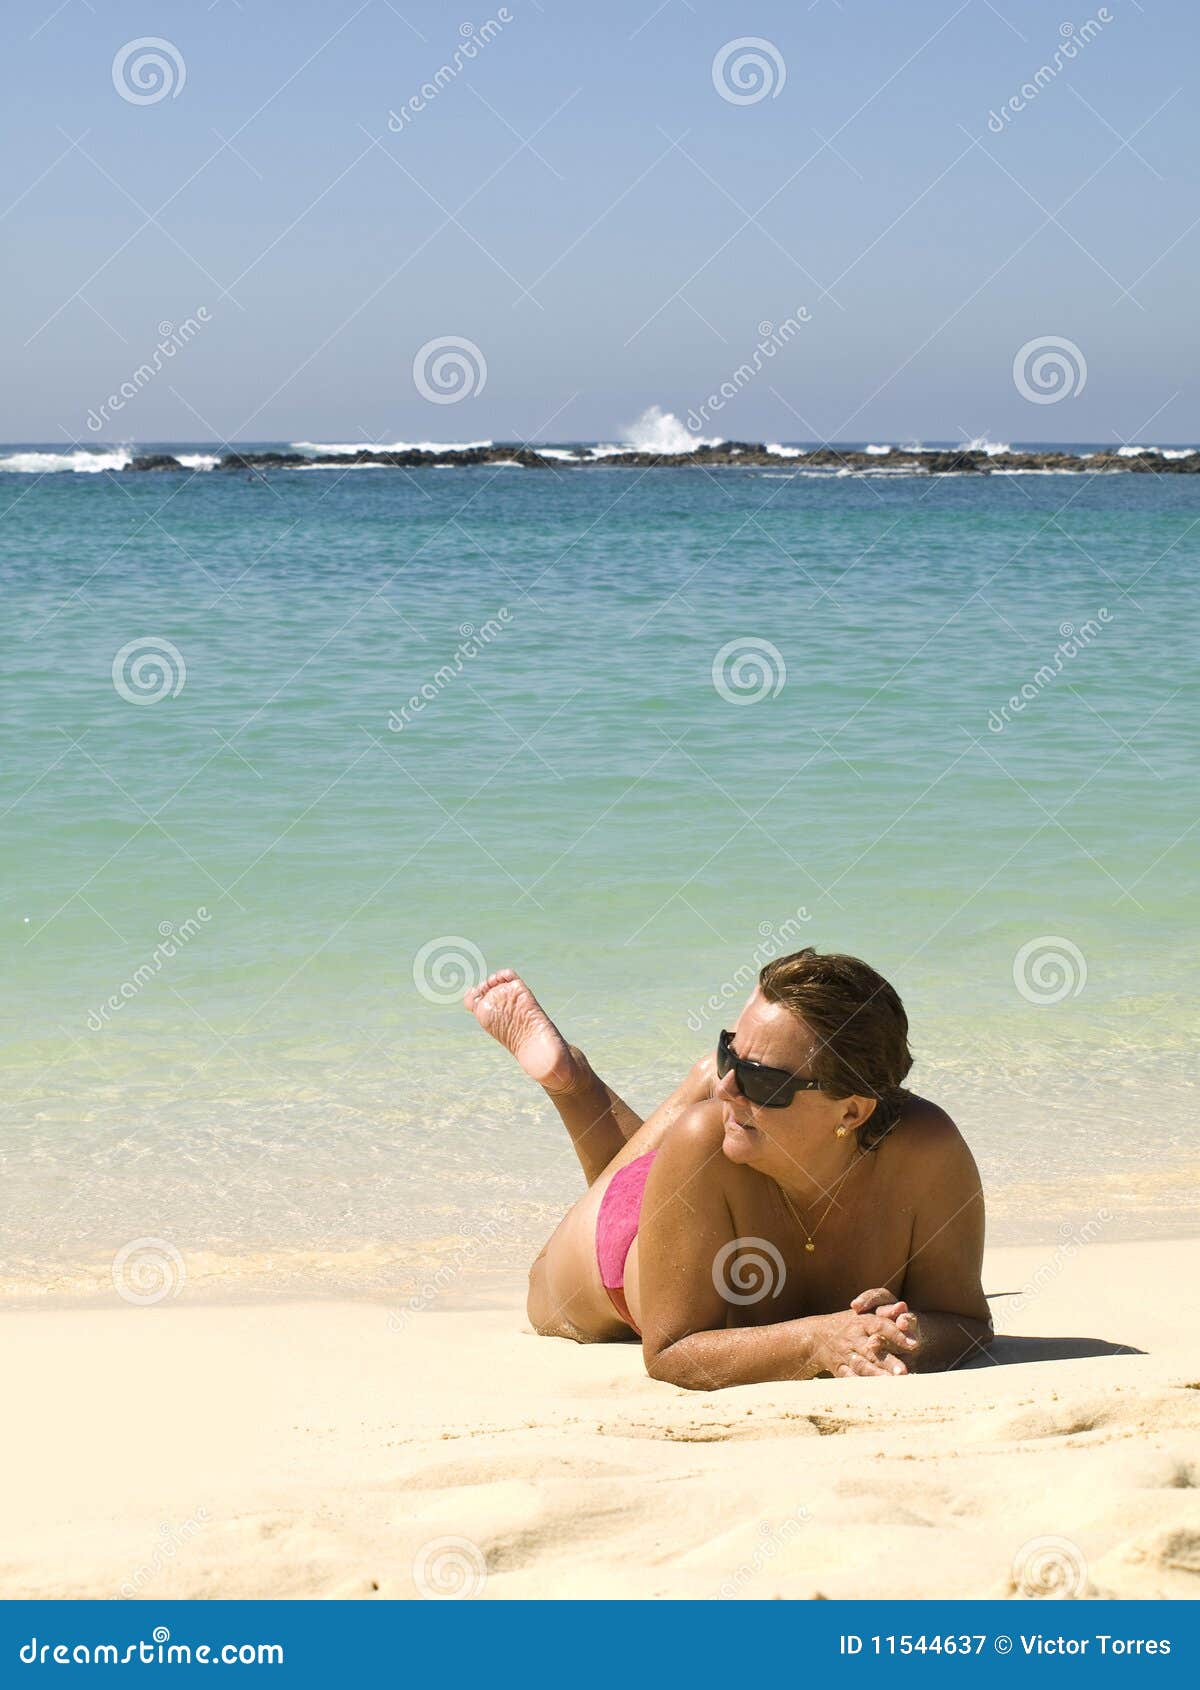 Mature women on nude beach